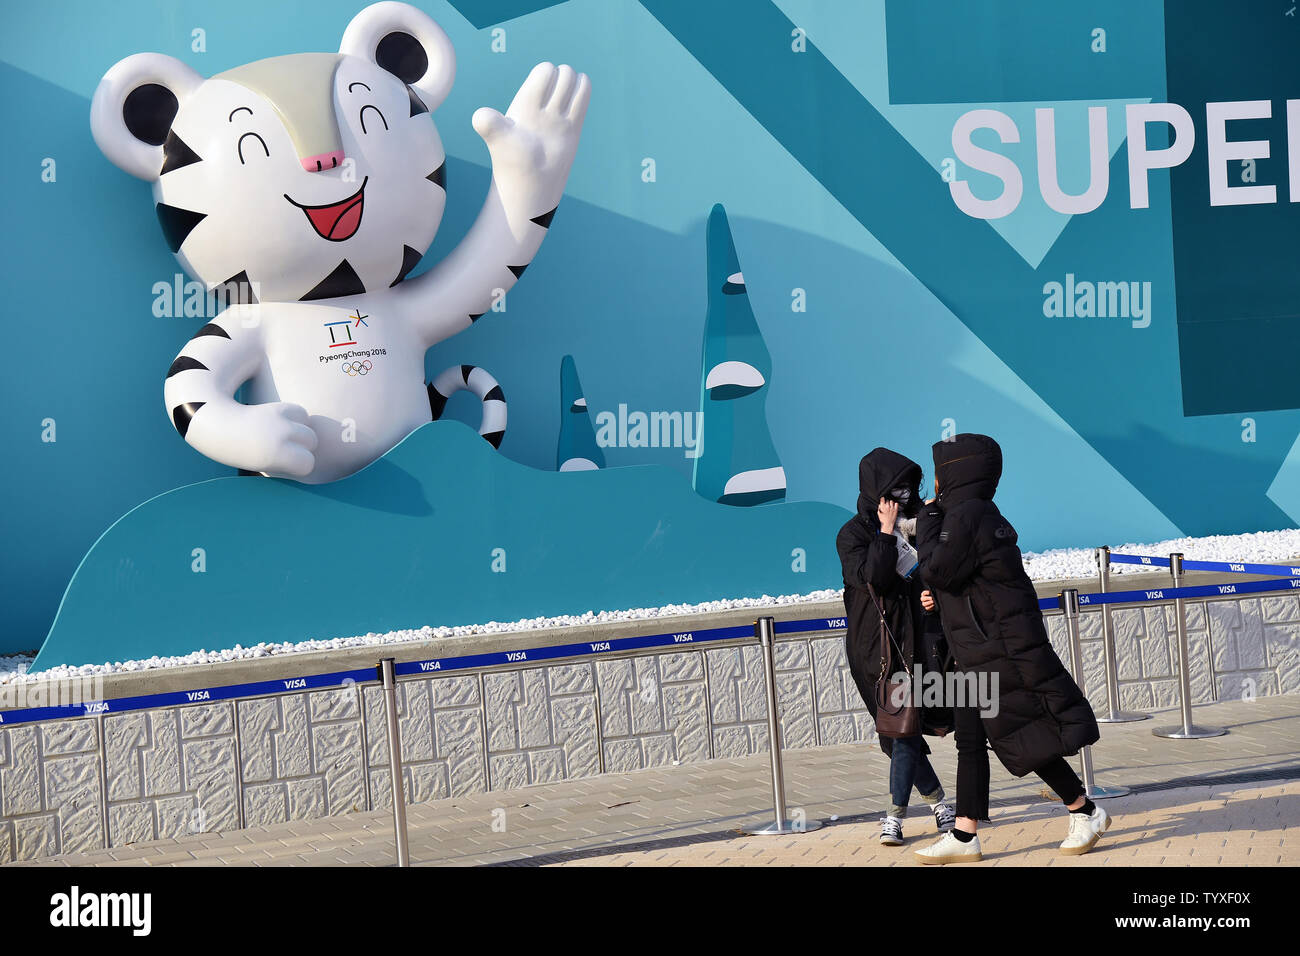 Zuschauer schützen ihre Gesichter Durchbrennen von Ablagerungen, wie sie der Olympic Park, nachdem starke Winde durch die Region, die die Pyeongchang 2018 Winter Olympics fegte, in Tainan, Südkorea, am 14. Februar 2018 verlassen. Foto von Richard Ellis/UPI Stockfoto